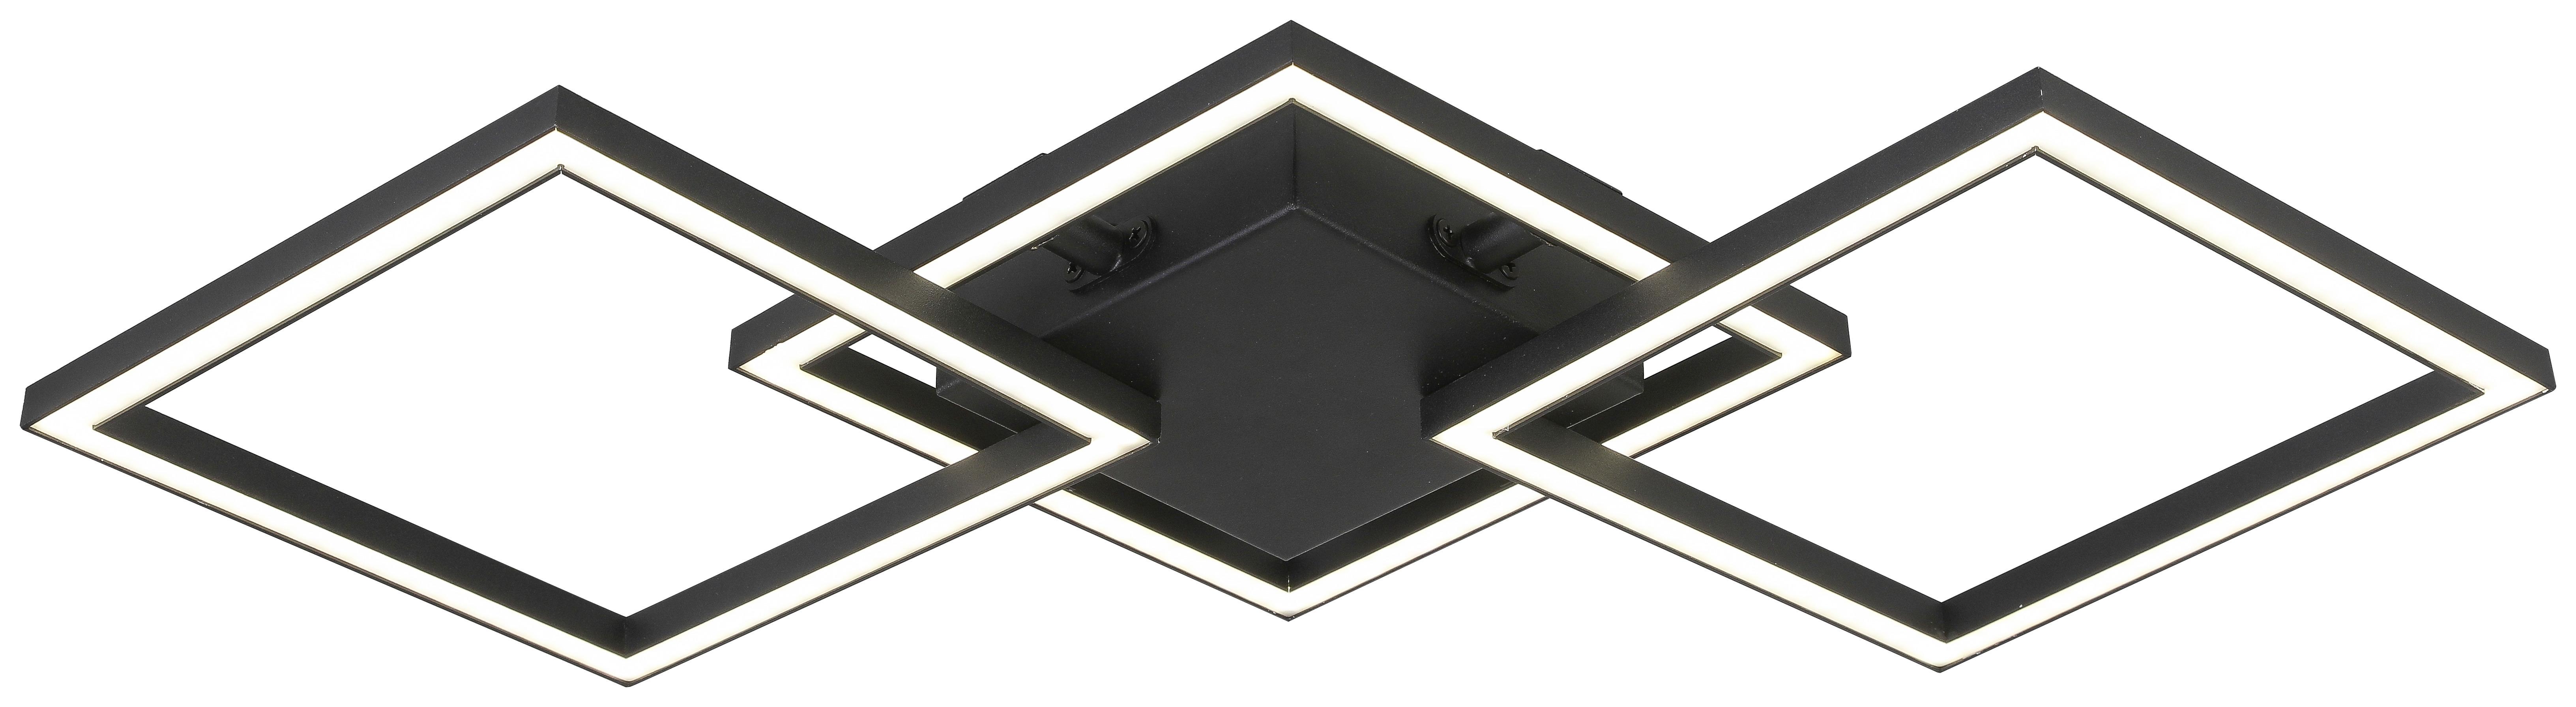 LED-Deckenleuchte Janne L: 63 cm, 1-Flammig - Schwarz, MODERN, Kunststoff/Metall (63cm) - Luca Bessoni